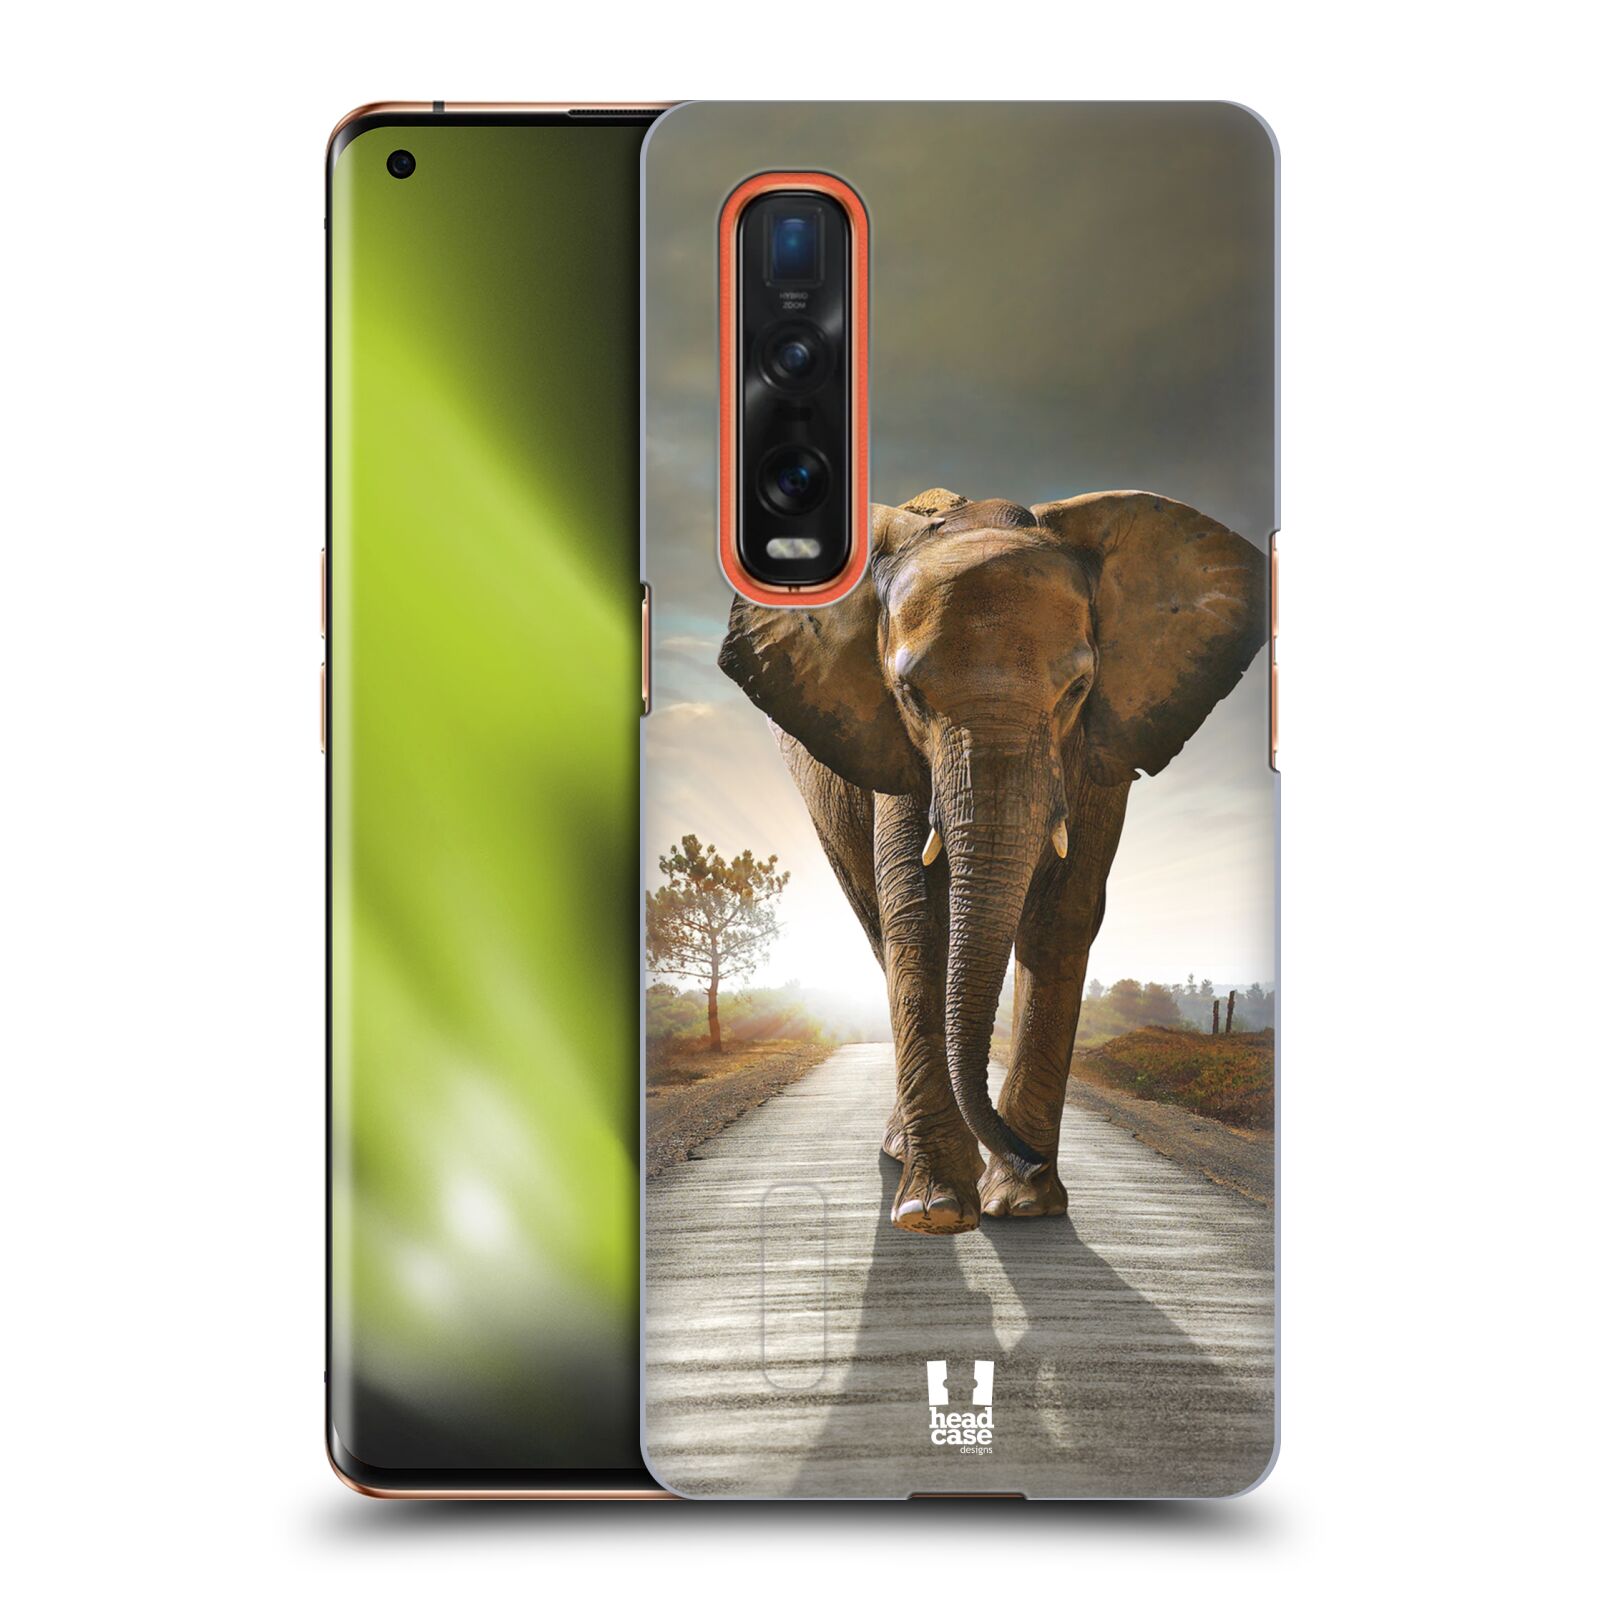 Zadní obal pro mobil Oppo Find X2 PRO - HEAD CASE - Svět zvířat kráčející slon